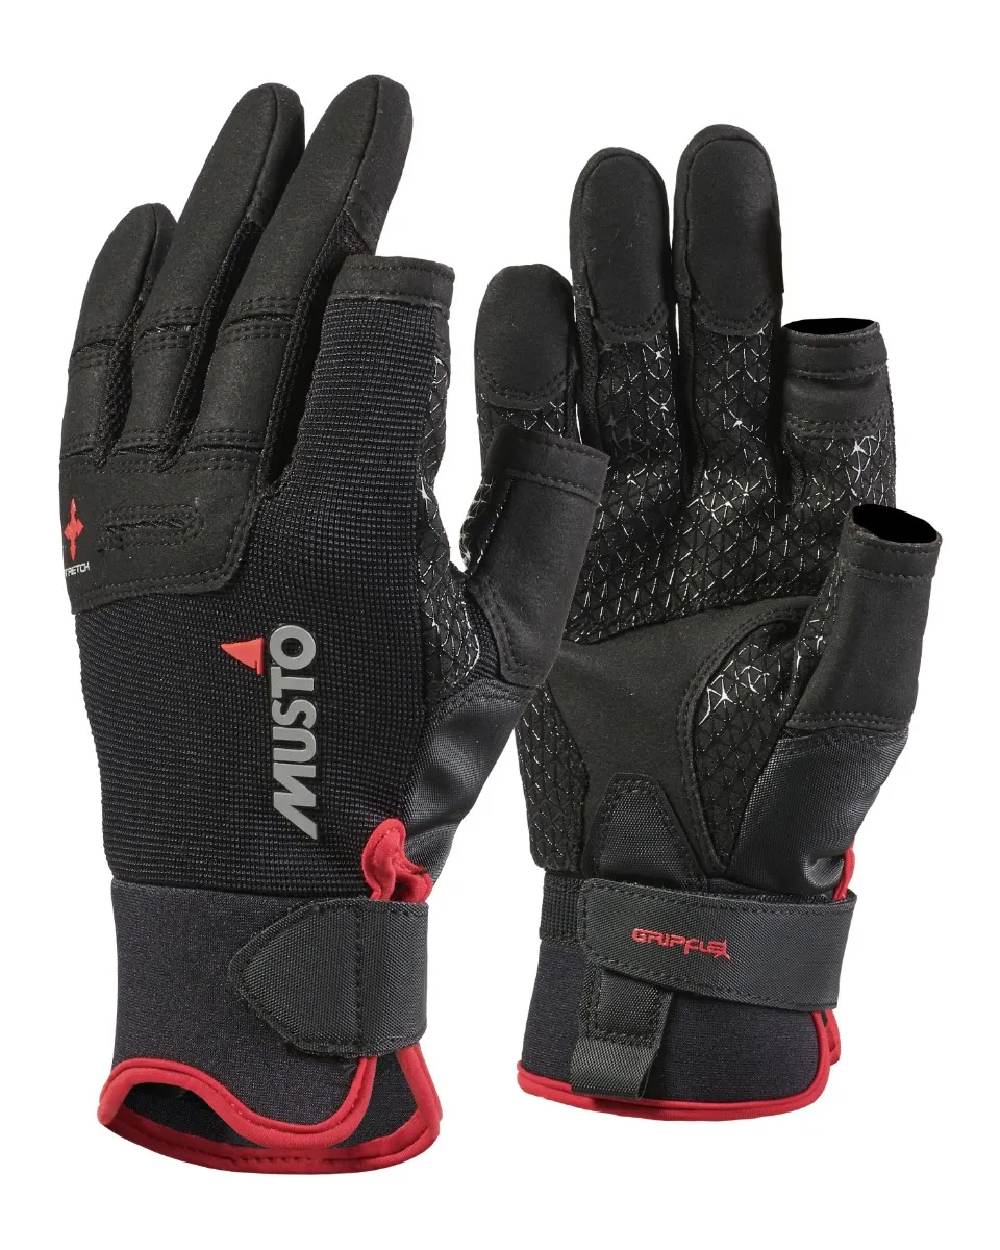 Musto Performance Long Finger Gloves in Black 